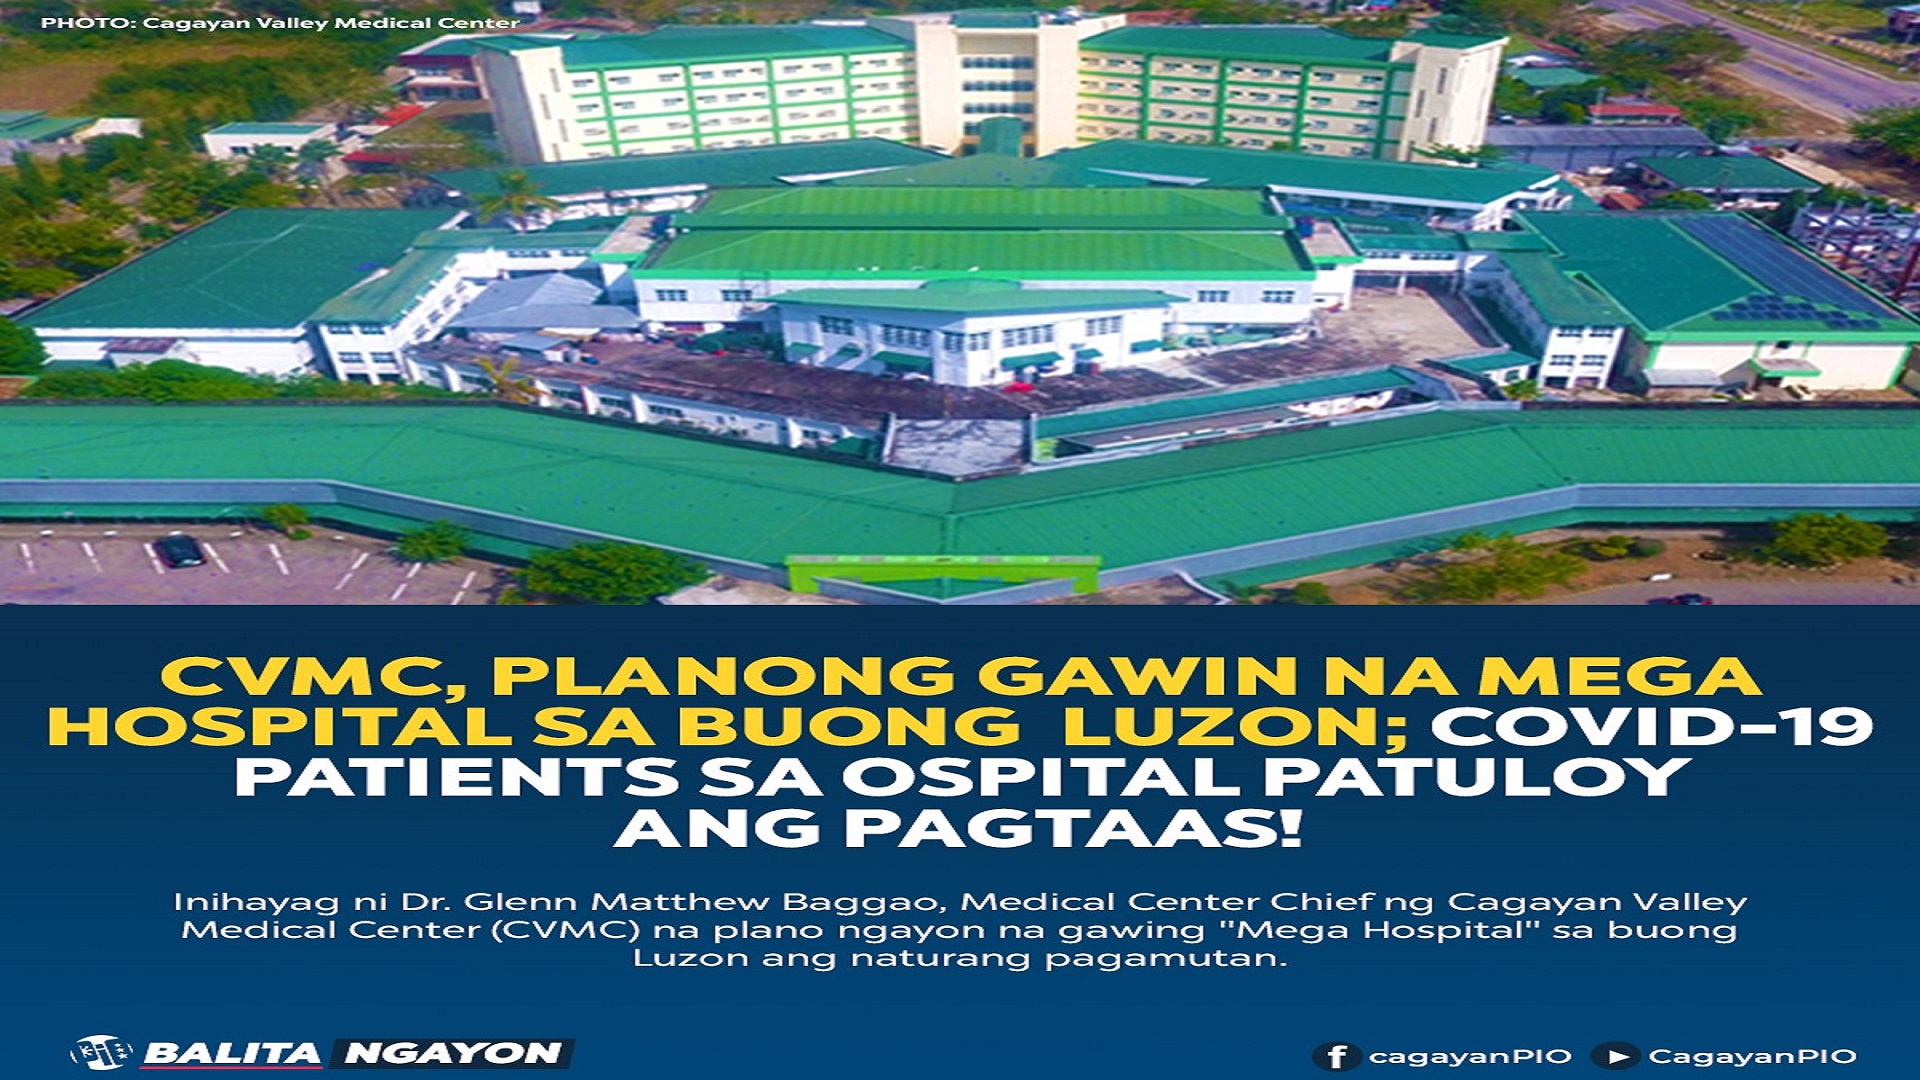 Cagayan Valley Medical Center planong gawing Mega Hospital sa buong Luzon